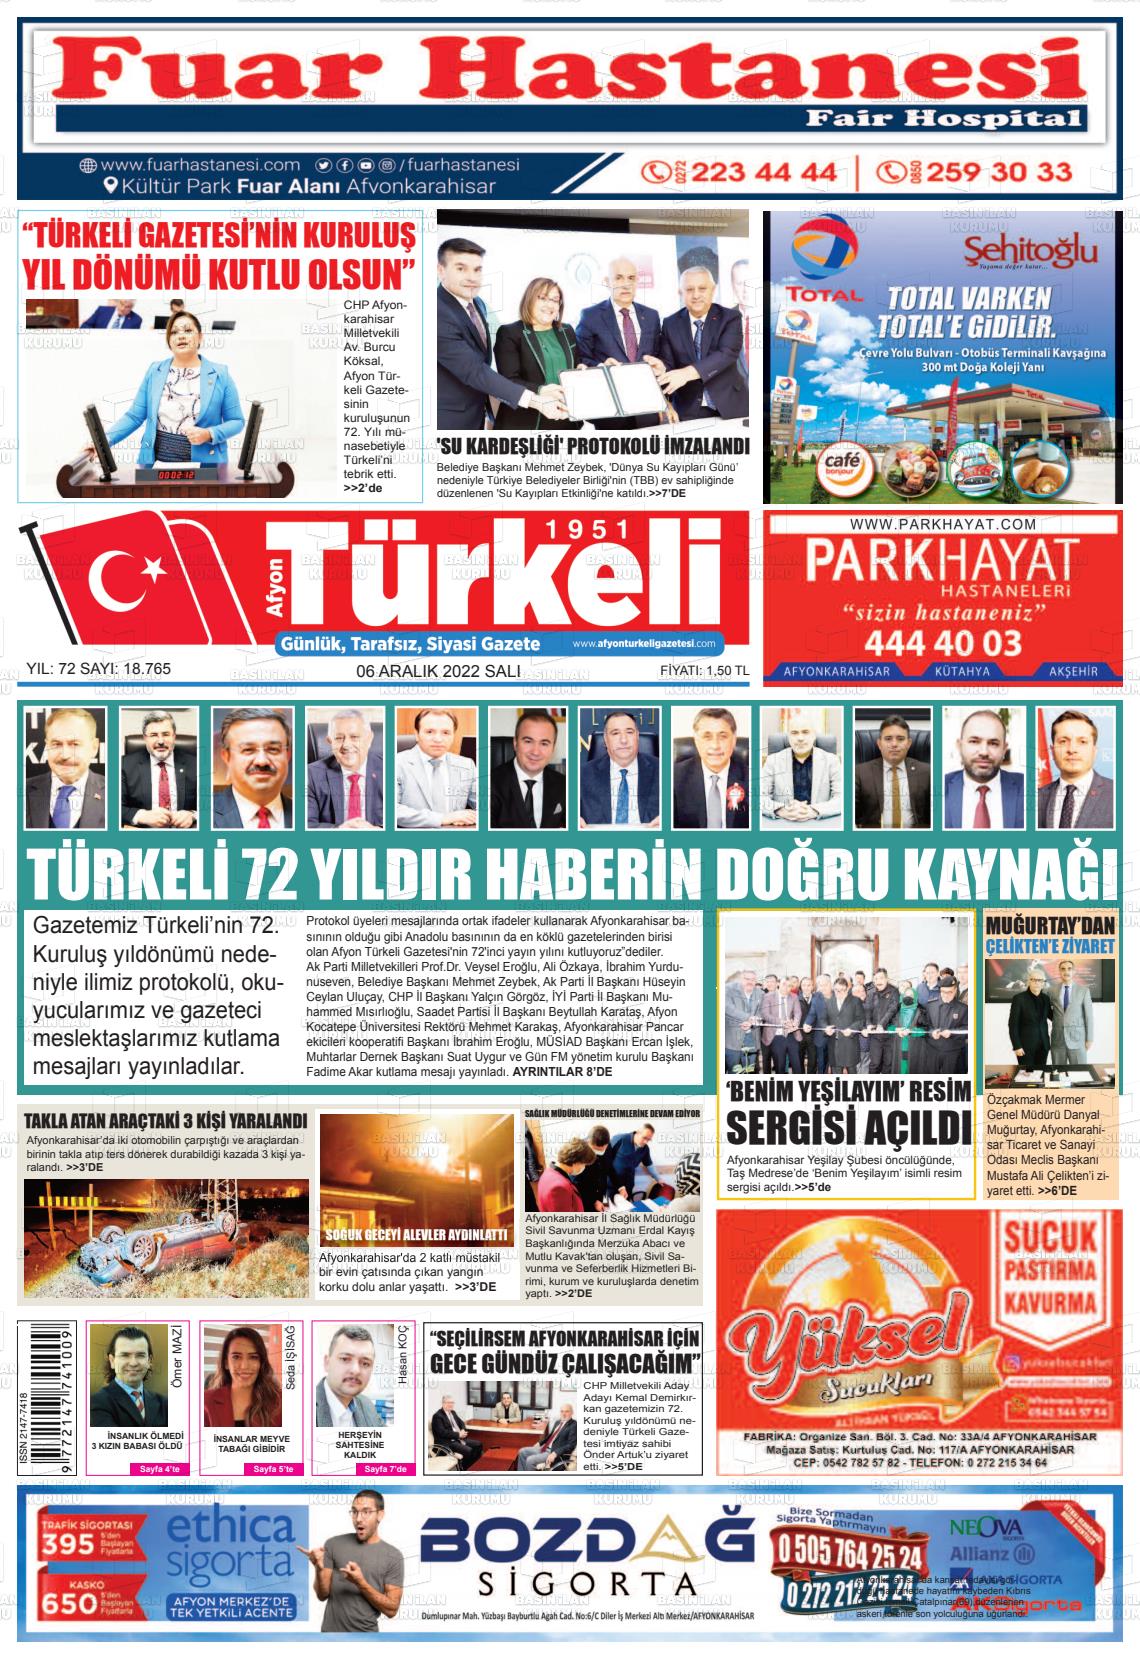 06 Aralık 2022 Afyon Türkeli Gazete Manşeti